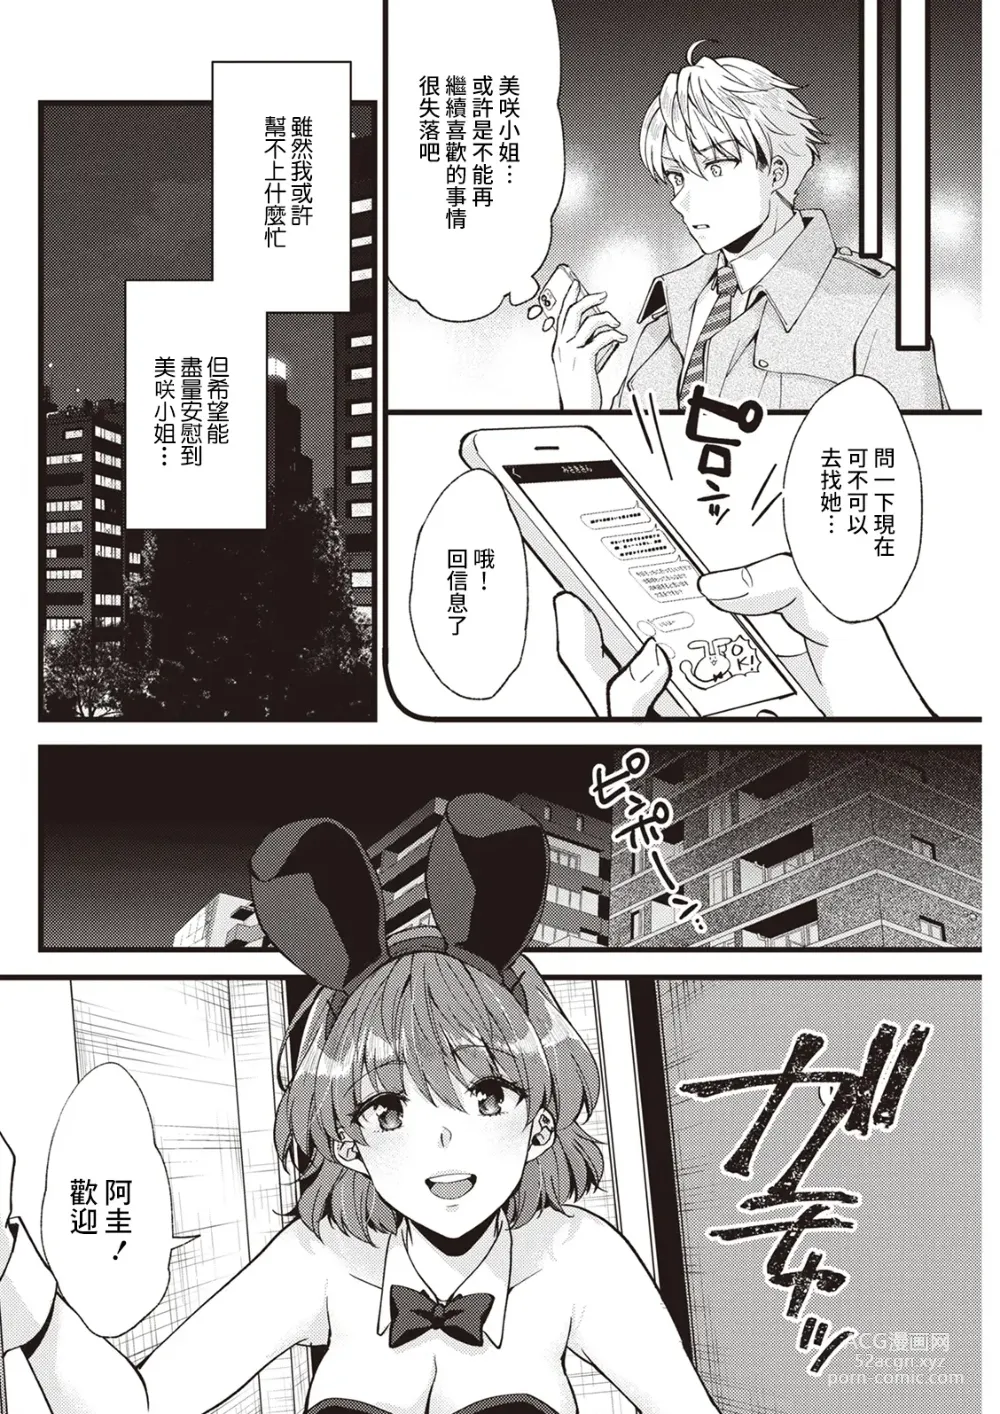 Page 4 of manga Koi wa Just in me